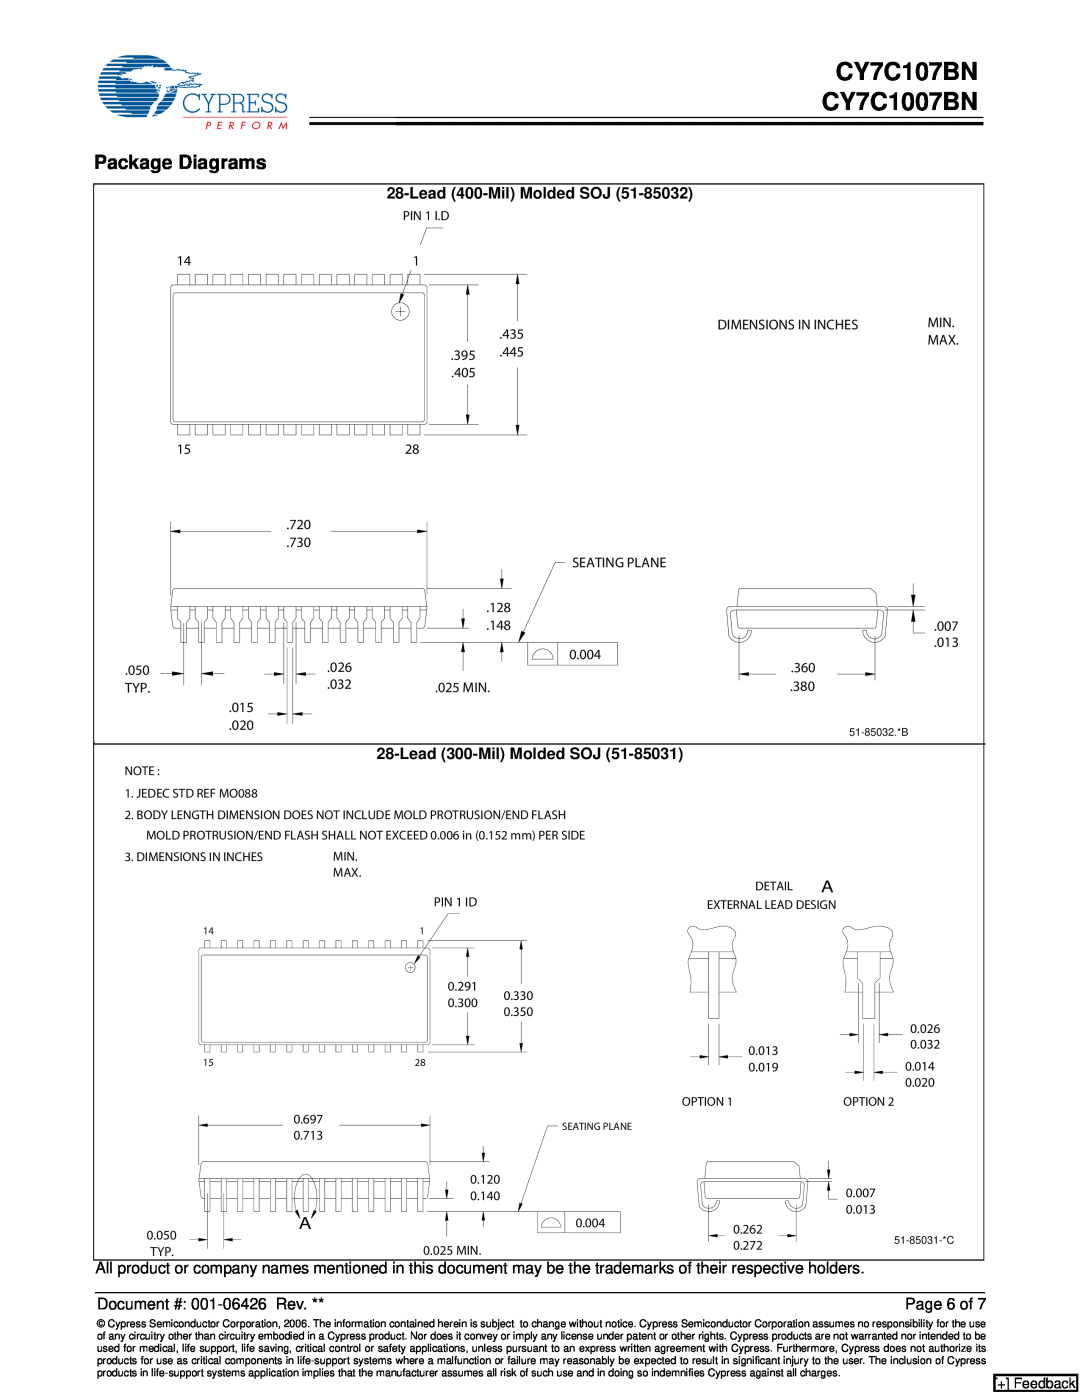 Cypress manual Package Diagrams, CY7C107BN CY7C1007BN, Lead 400-Mil Molded SOJ, Lead 300-Mil Molded SOJ, + Feedback 